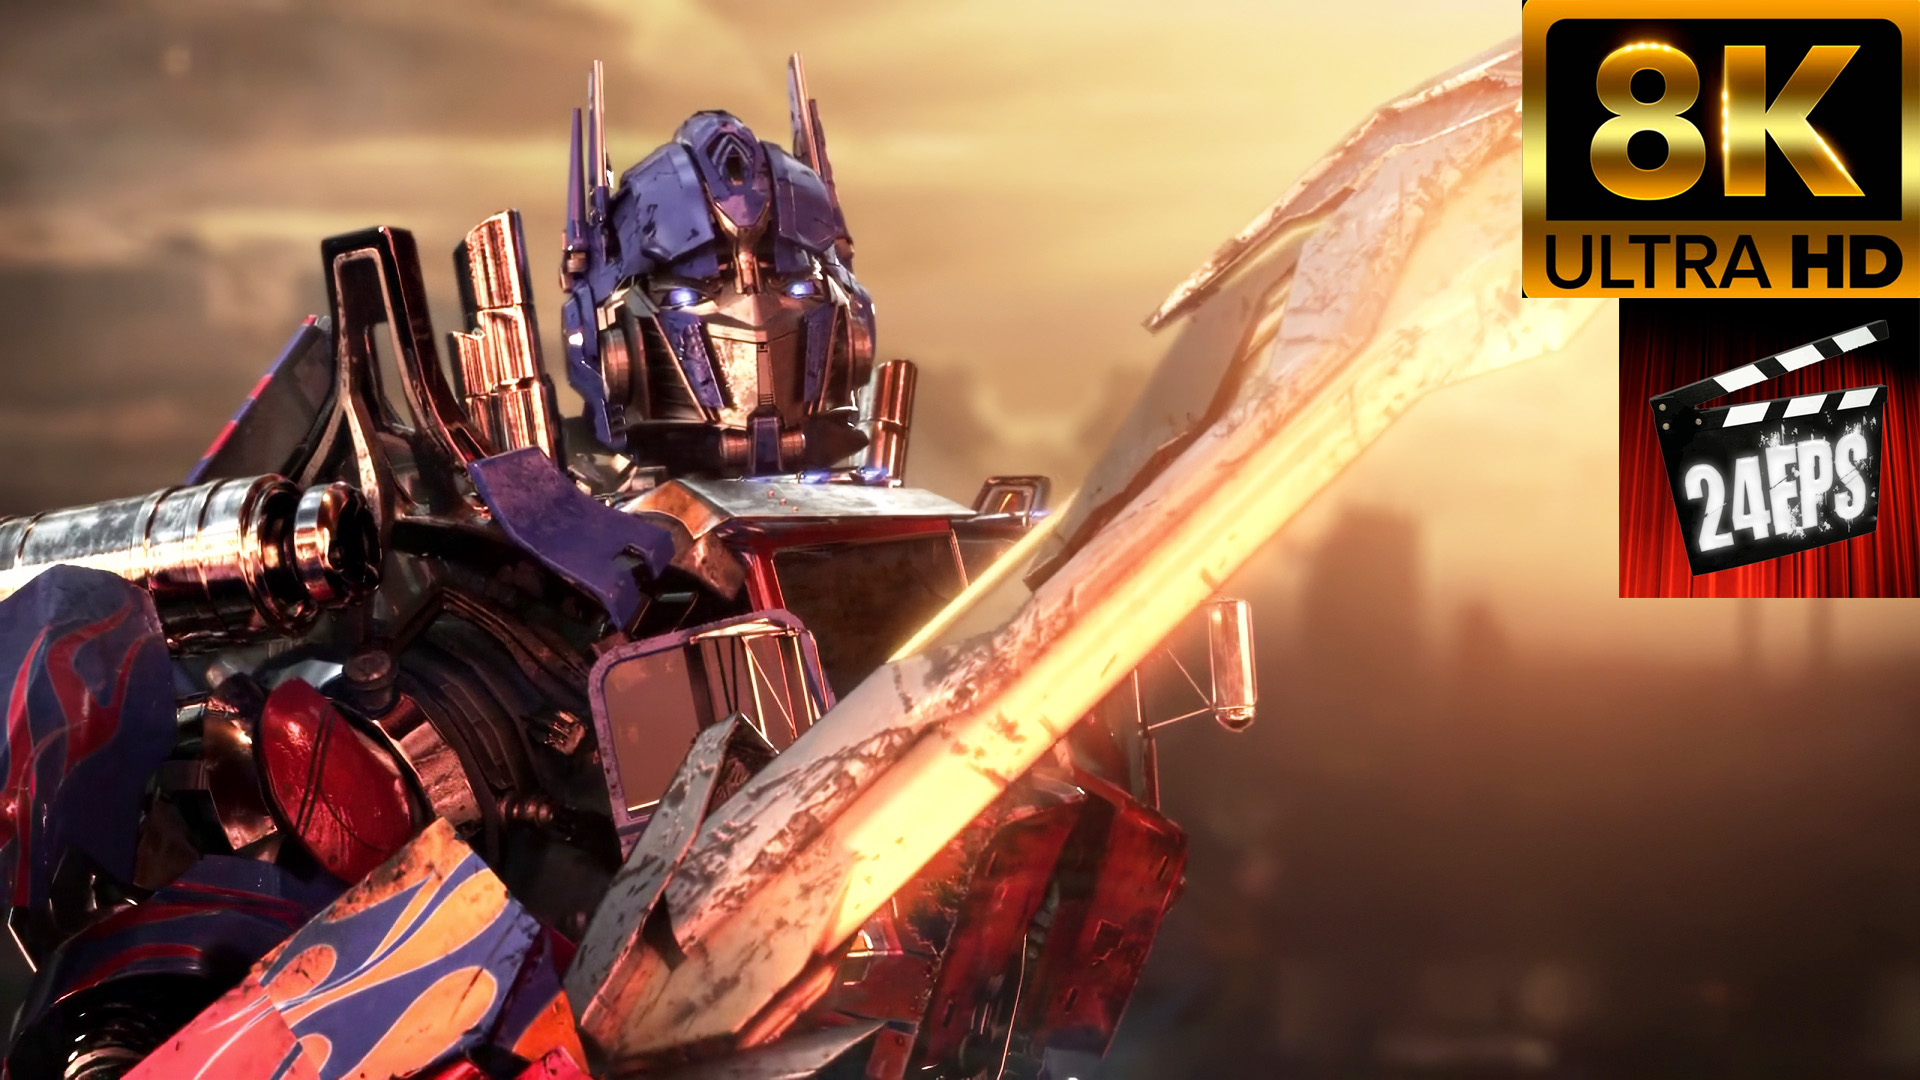 Transformers Revenge of the Fallen - Teaser (Remastered 8K)